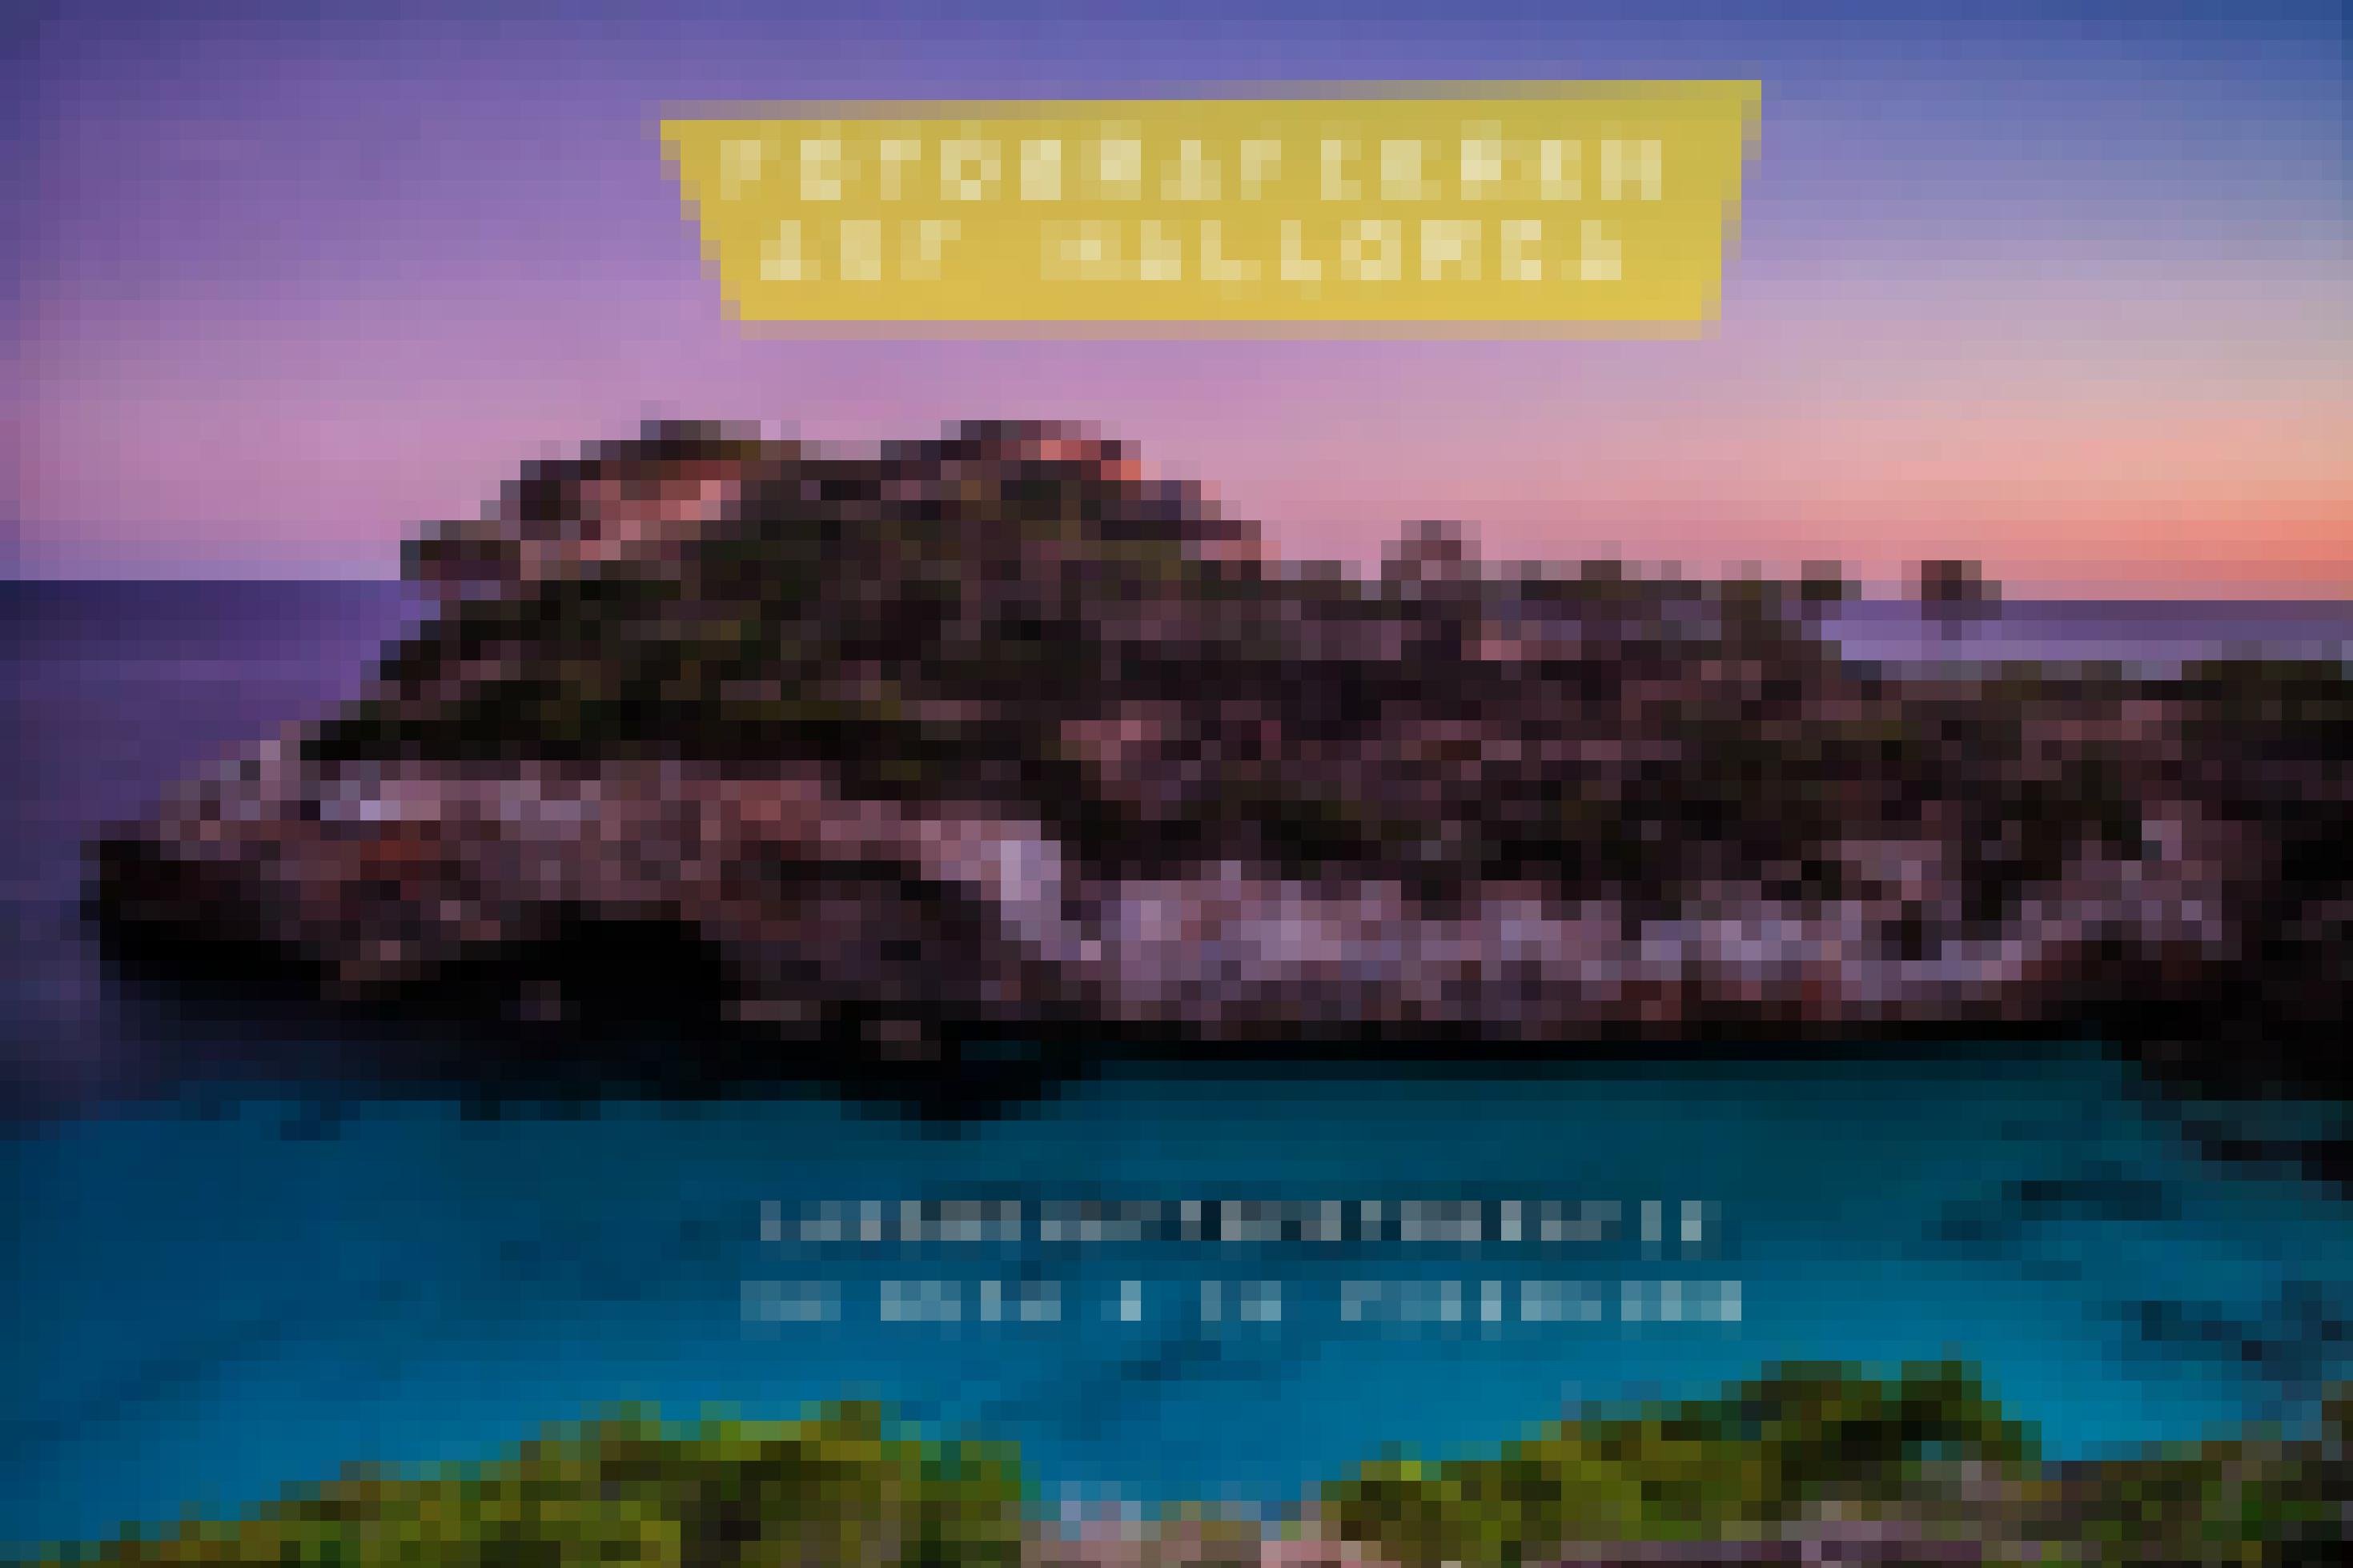 Landschaftsfotografie auf Mallorca, ab Februar 2022 im dpunkt Verlag